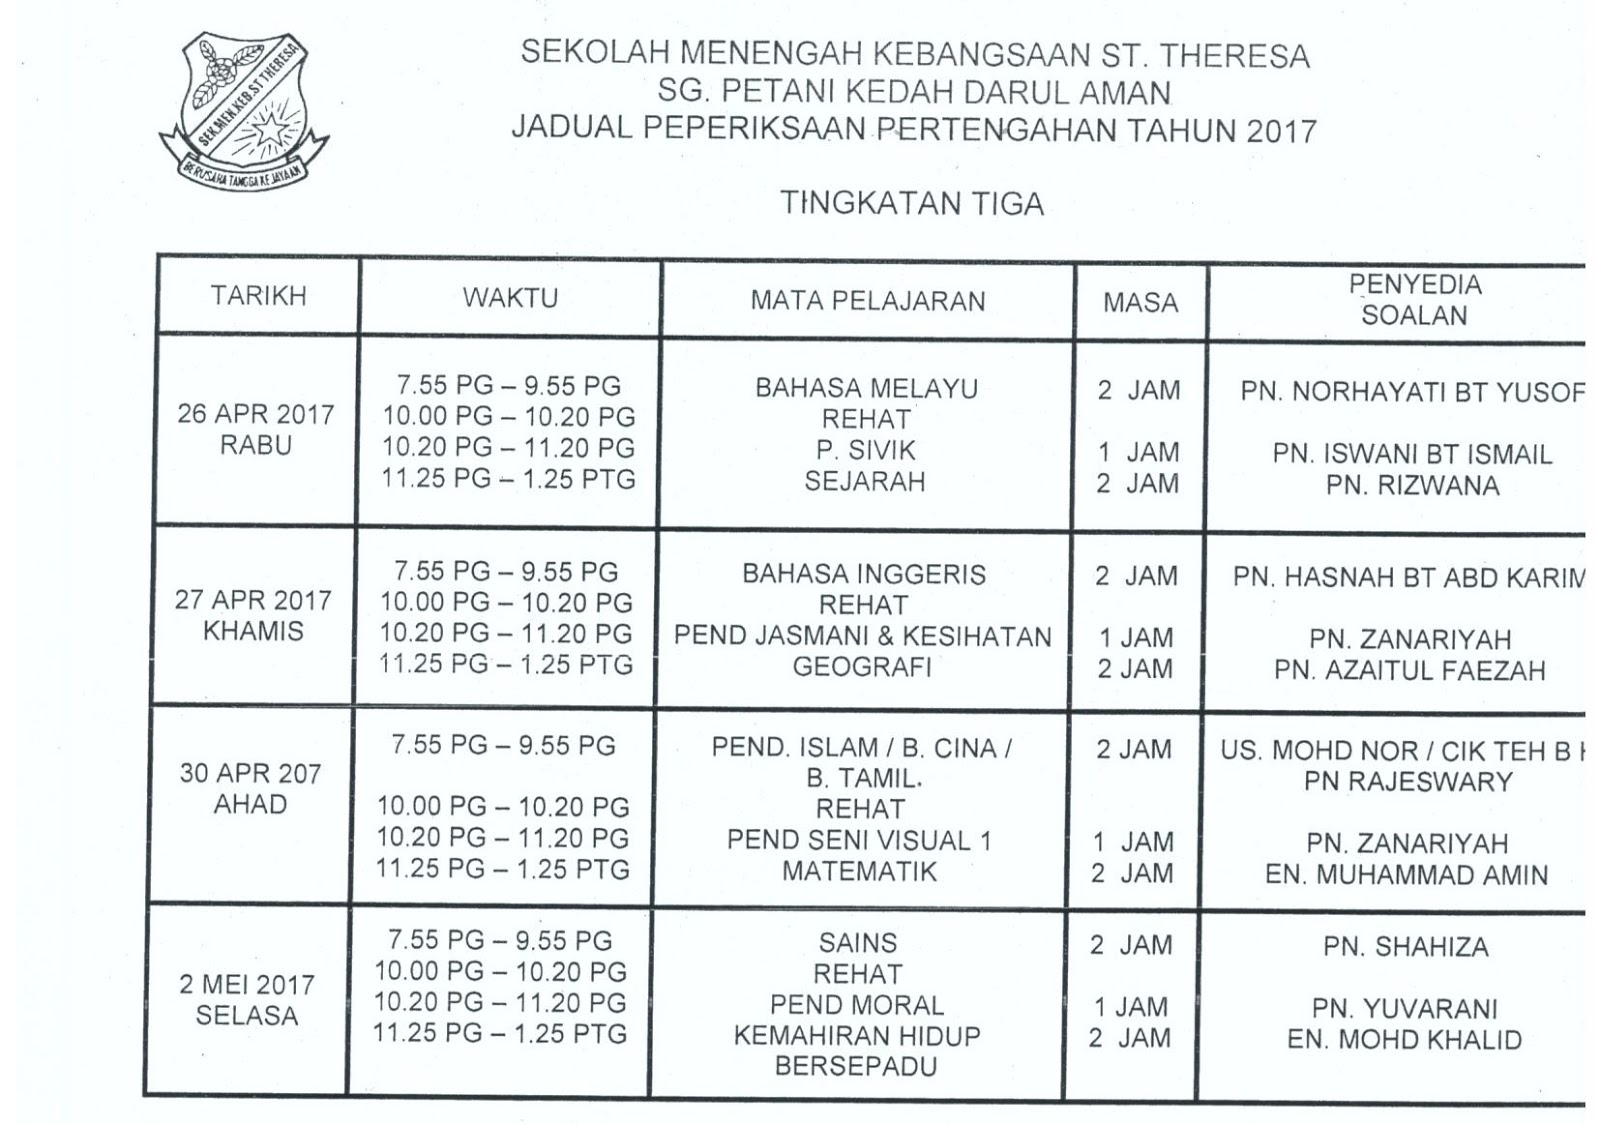 SMK St Theresa, Sungai Petani, Kedah DA JADUAL PEPERIKSAAN PERTENGAHAN